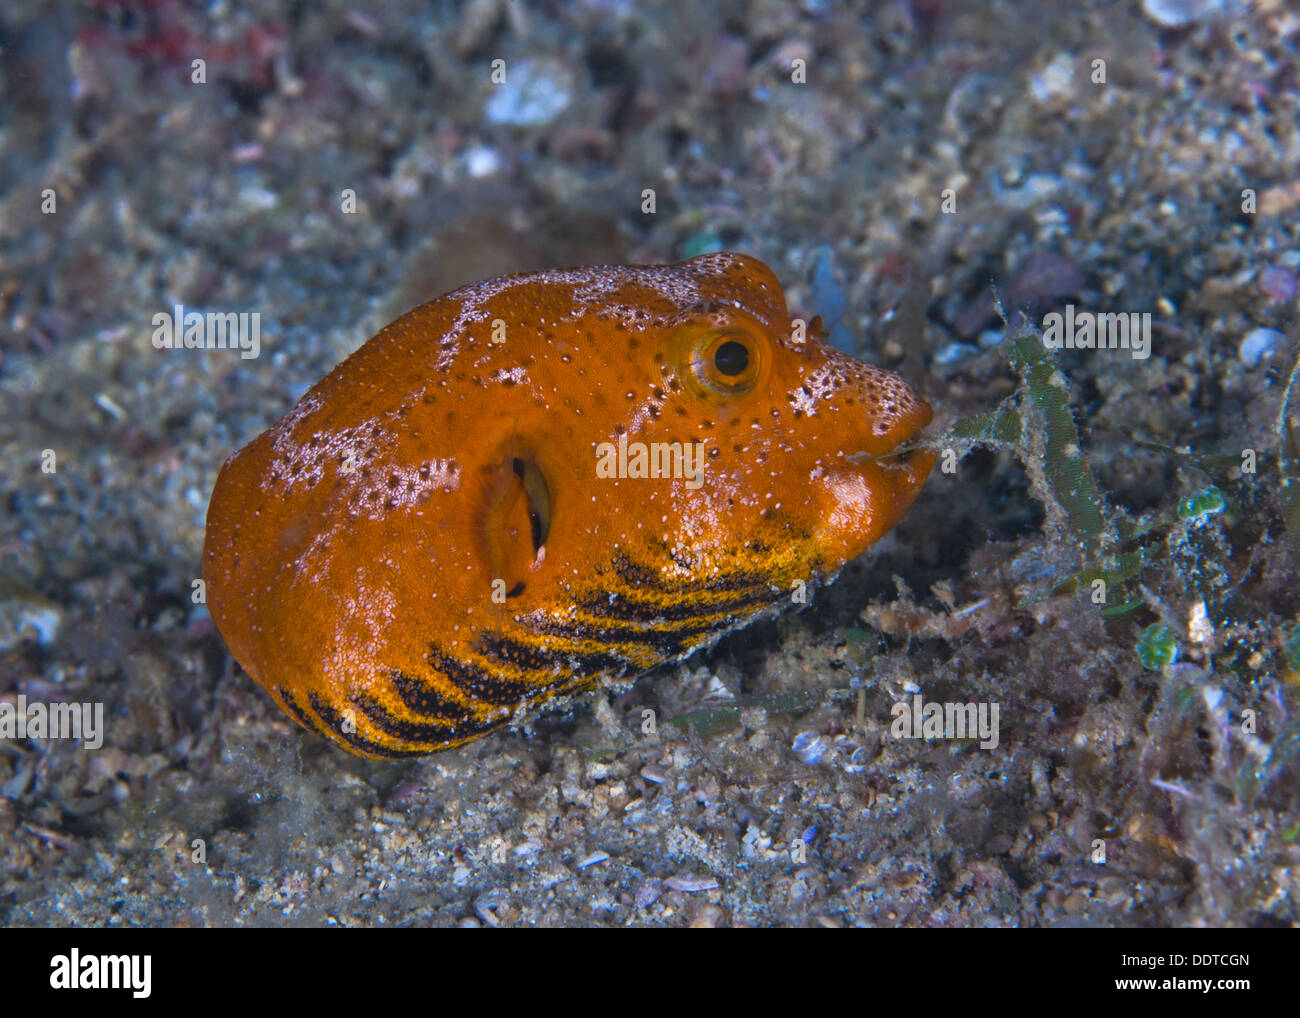 Juvenile starry pufferfish munching on seaweed Puerto Galera, Philippines. Stock Photo